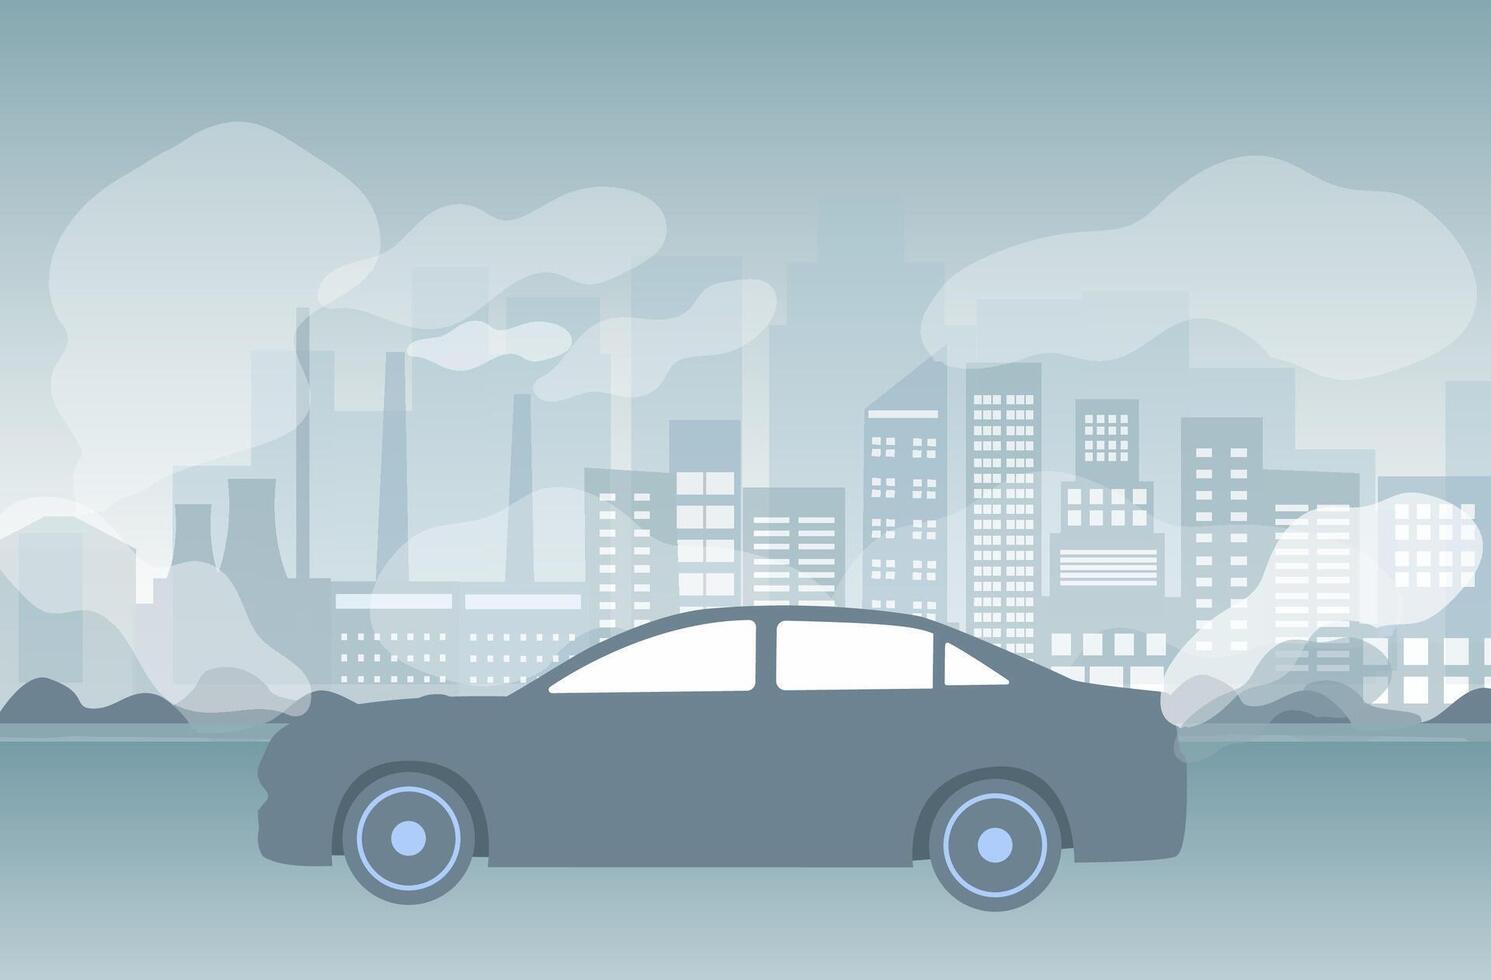 ar poluição, PM 2.5, indústria poluição, tóxico estrada fumaça nuvens e meio Ambiente poluição, e veículo carbono dióxido vetor ilustração.